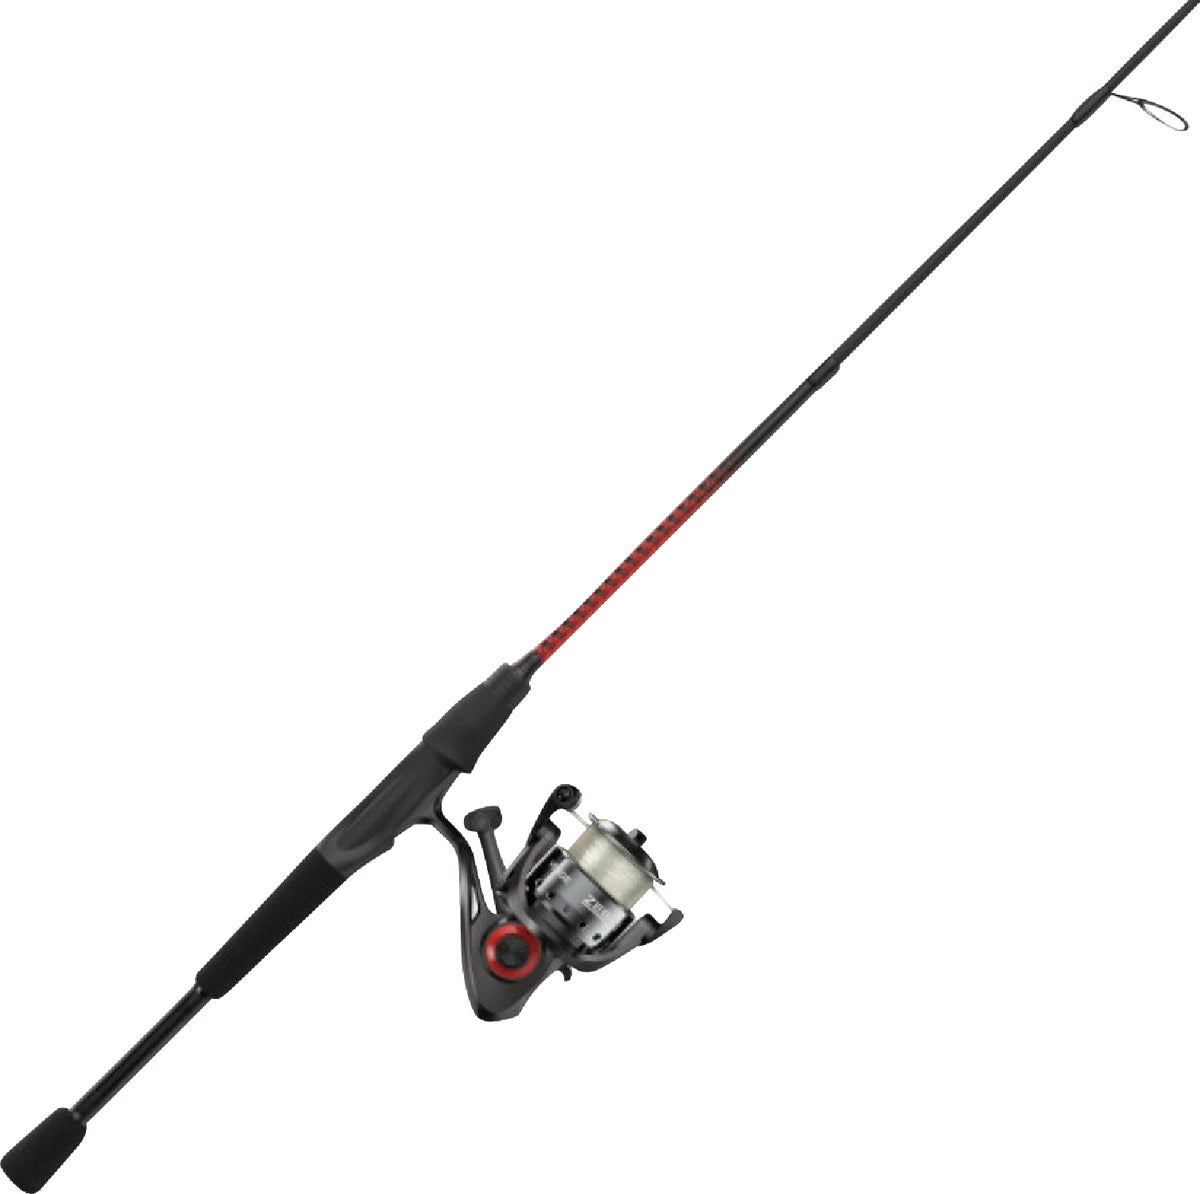 SouthBend Trophy Stalker 7 Ft. Fiberglass Fishing Rod & Spinning Reel